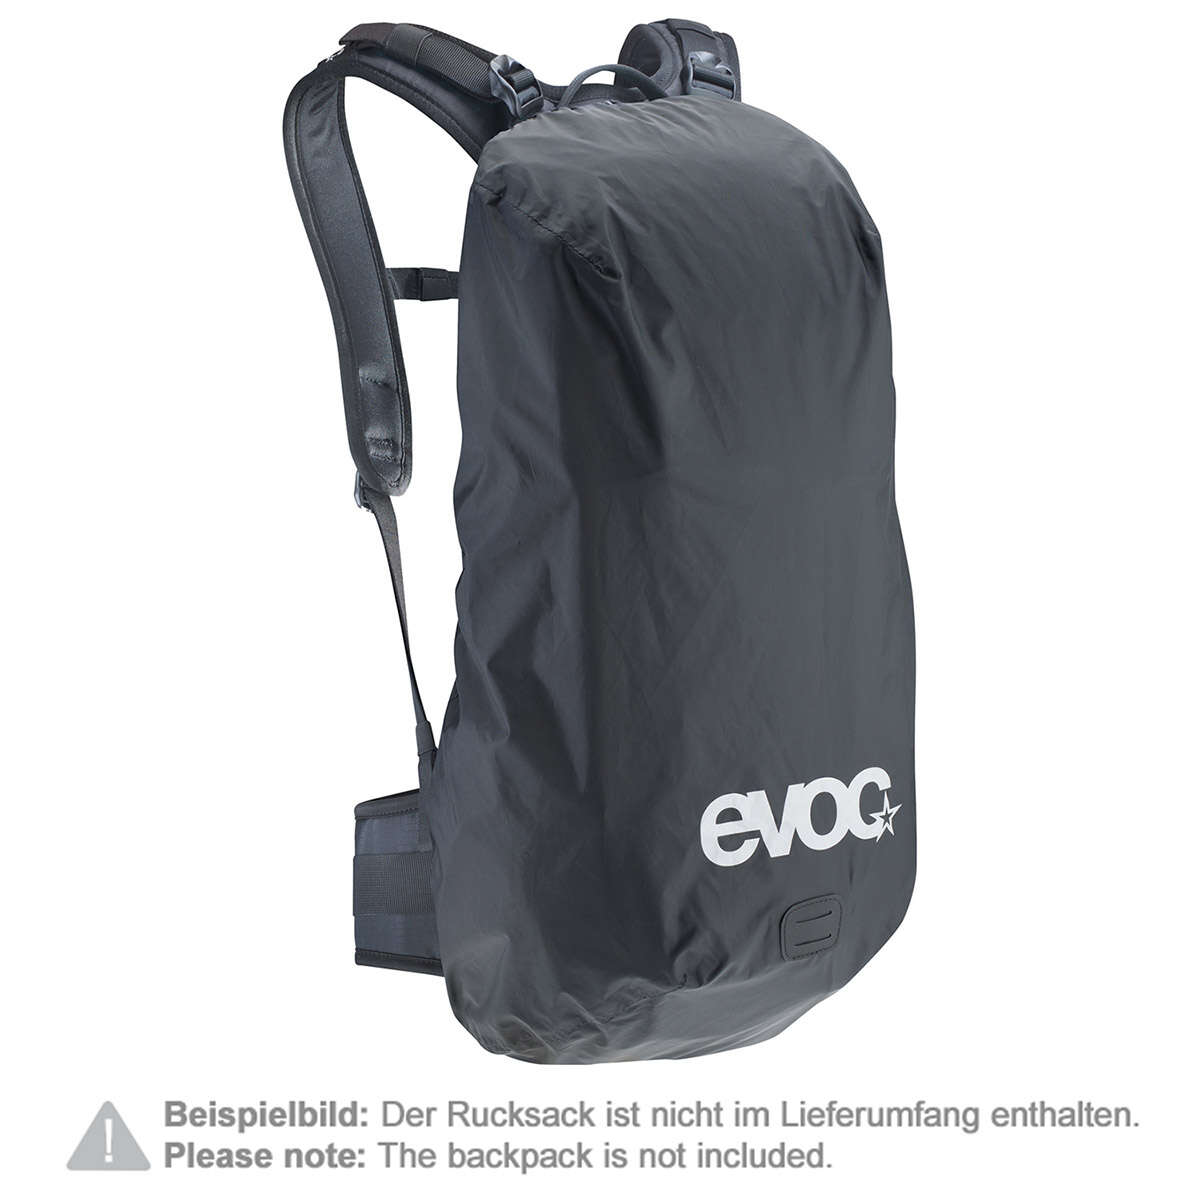 Evoc Backpack Raincover Raincover Sleeve Black, 25-45 Liter